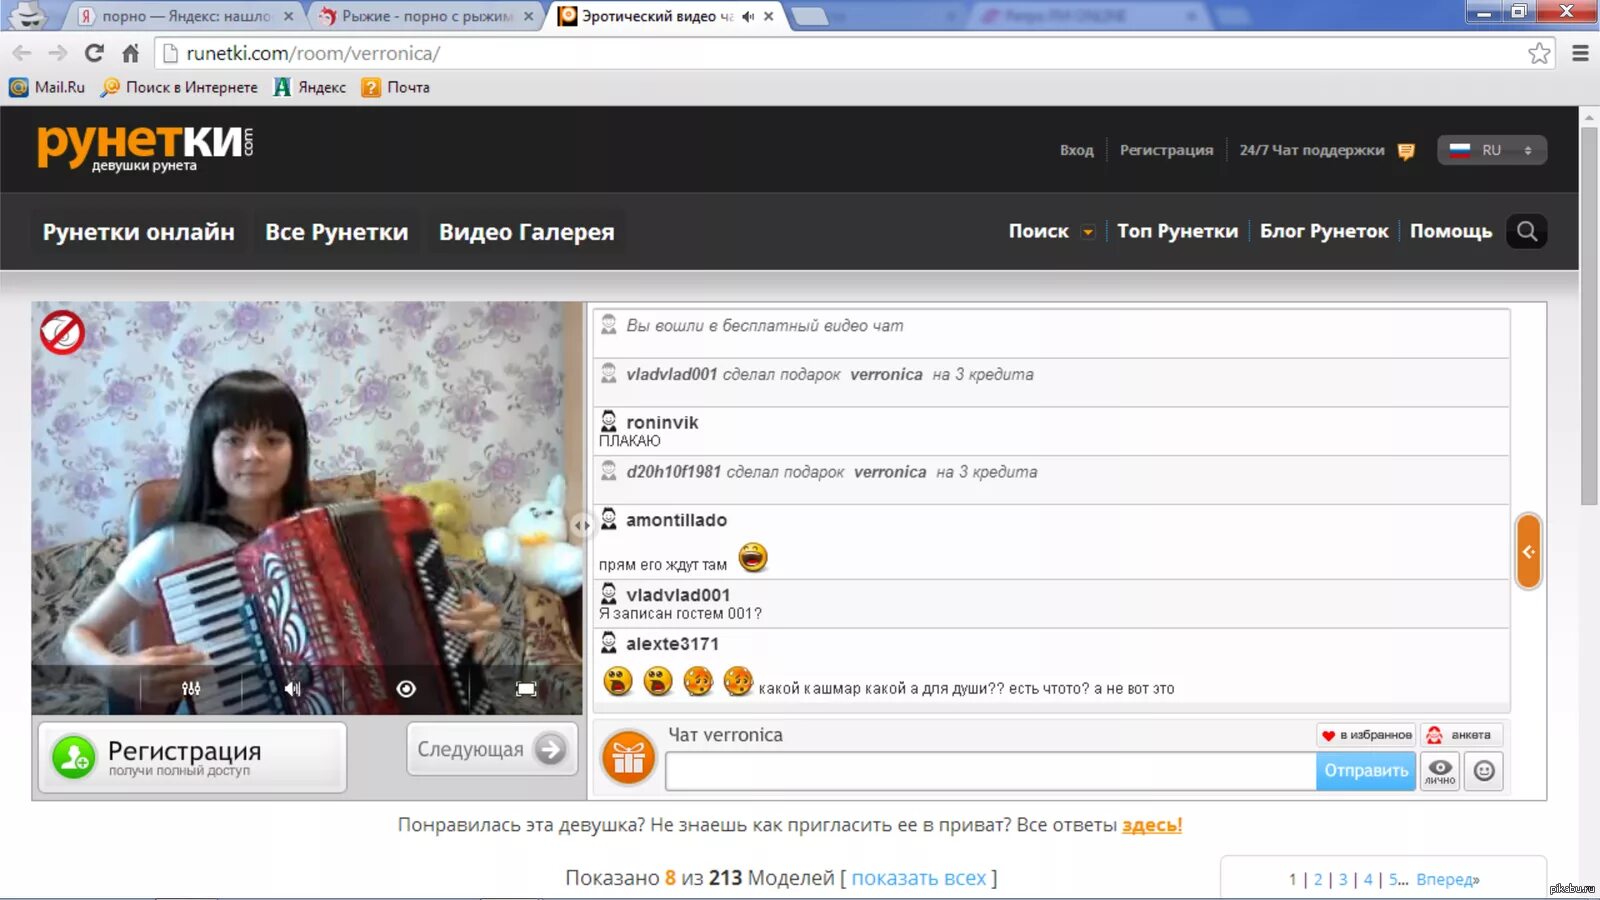 Bonga camp. Видеочат с девушками рунета. Популярные сайты рунетки. Самые известные рунетки.